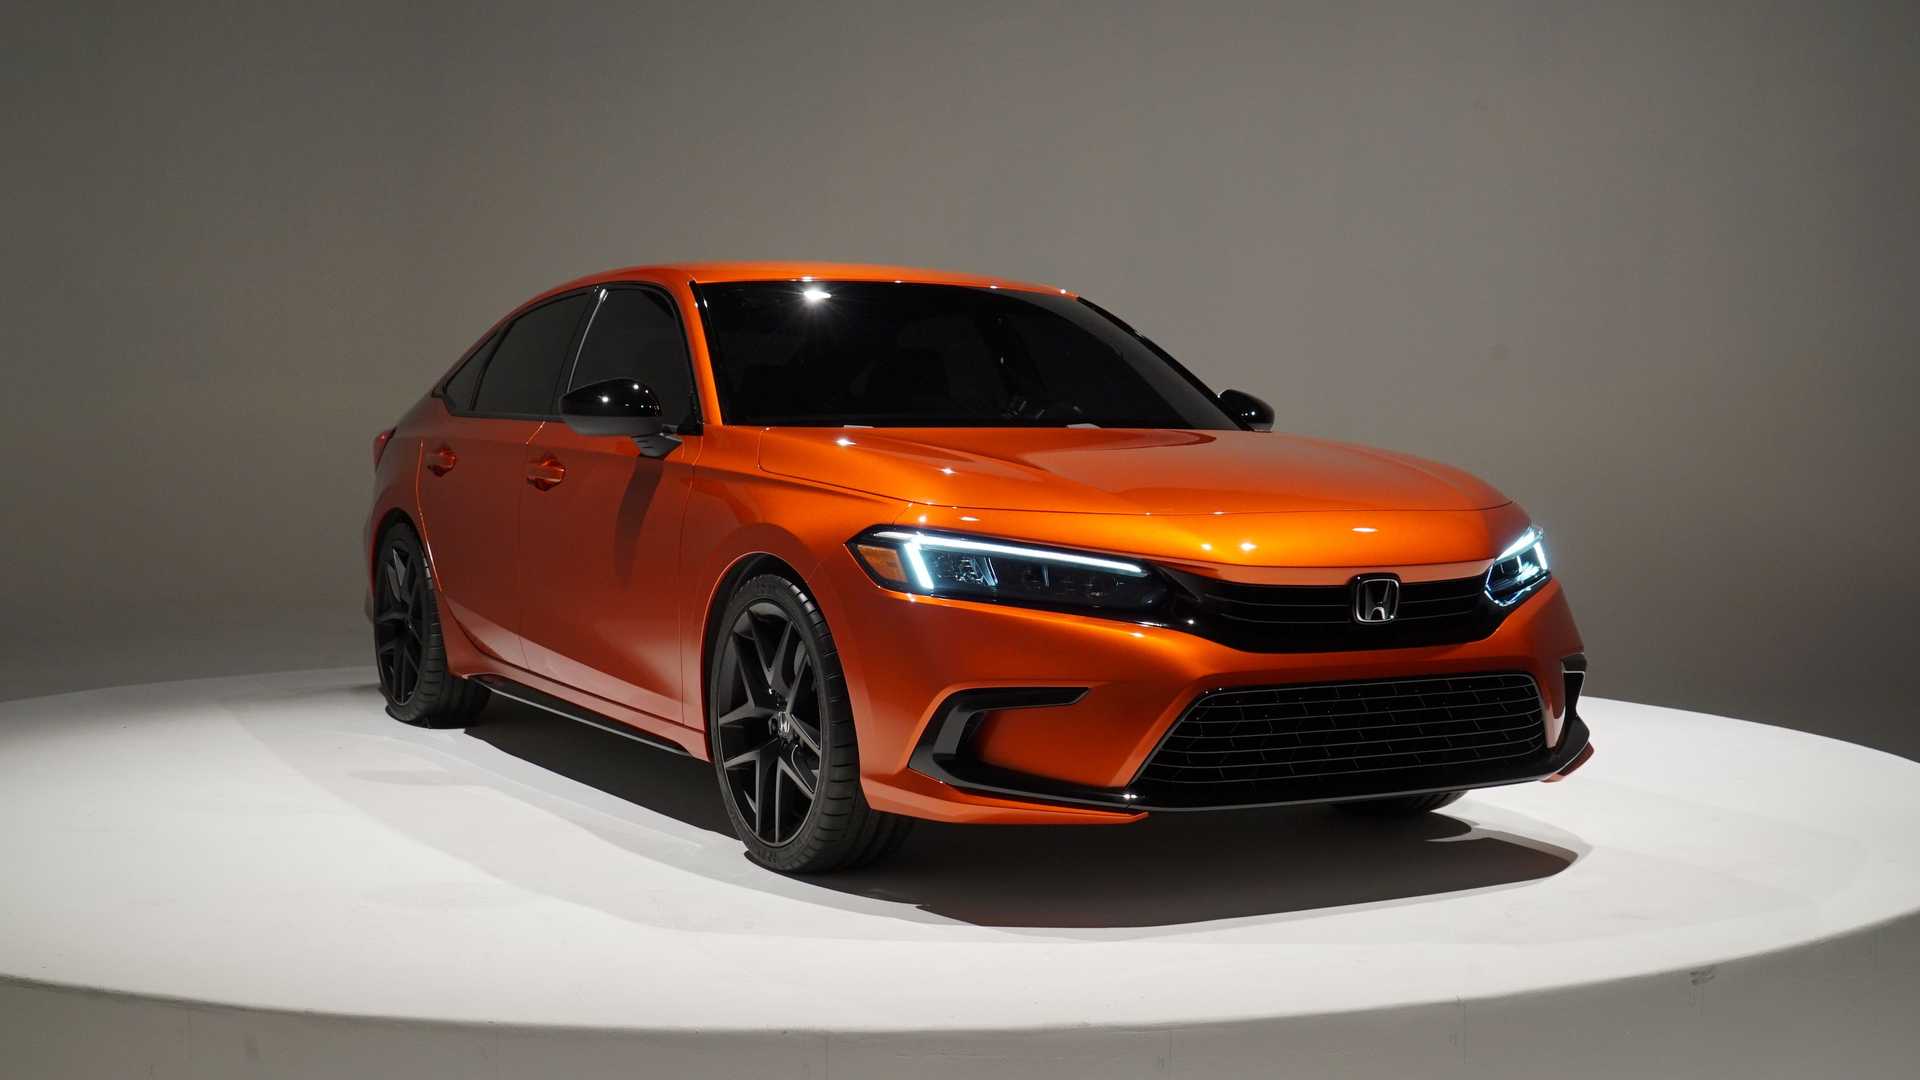 2021 Honda Civic Tanıtıldı! Şık Tasarımı Dikkat Çekti